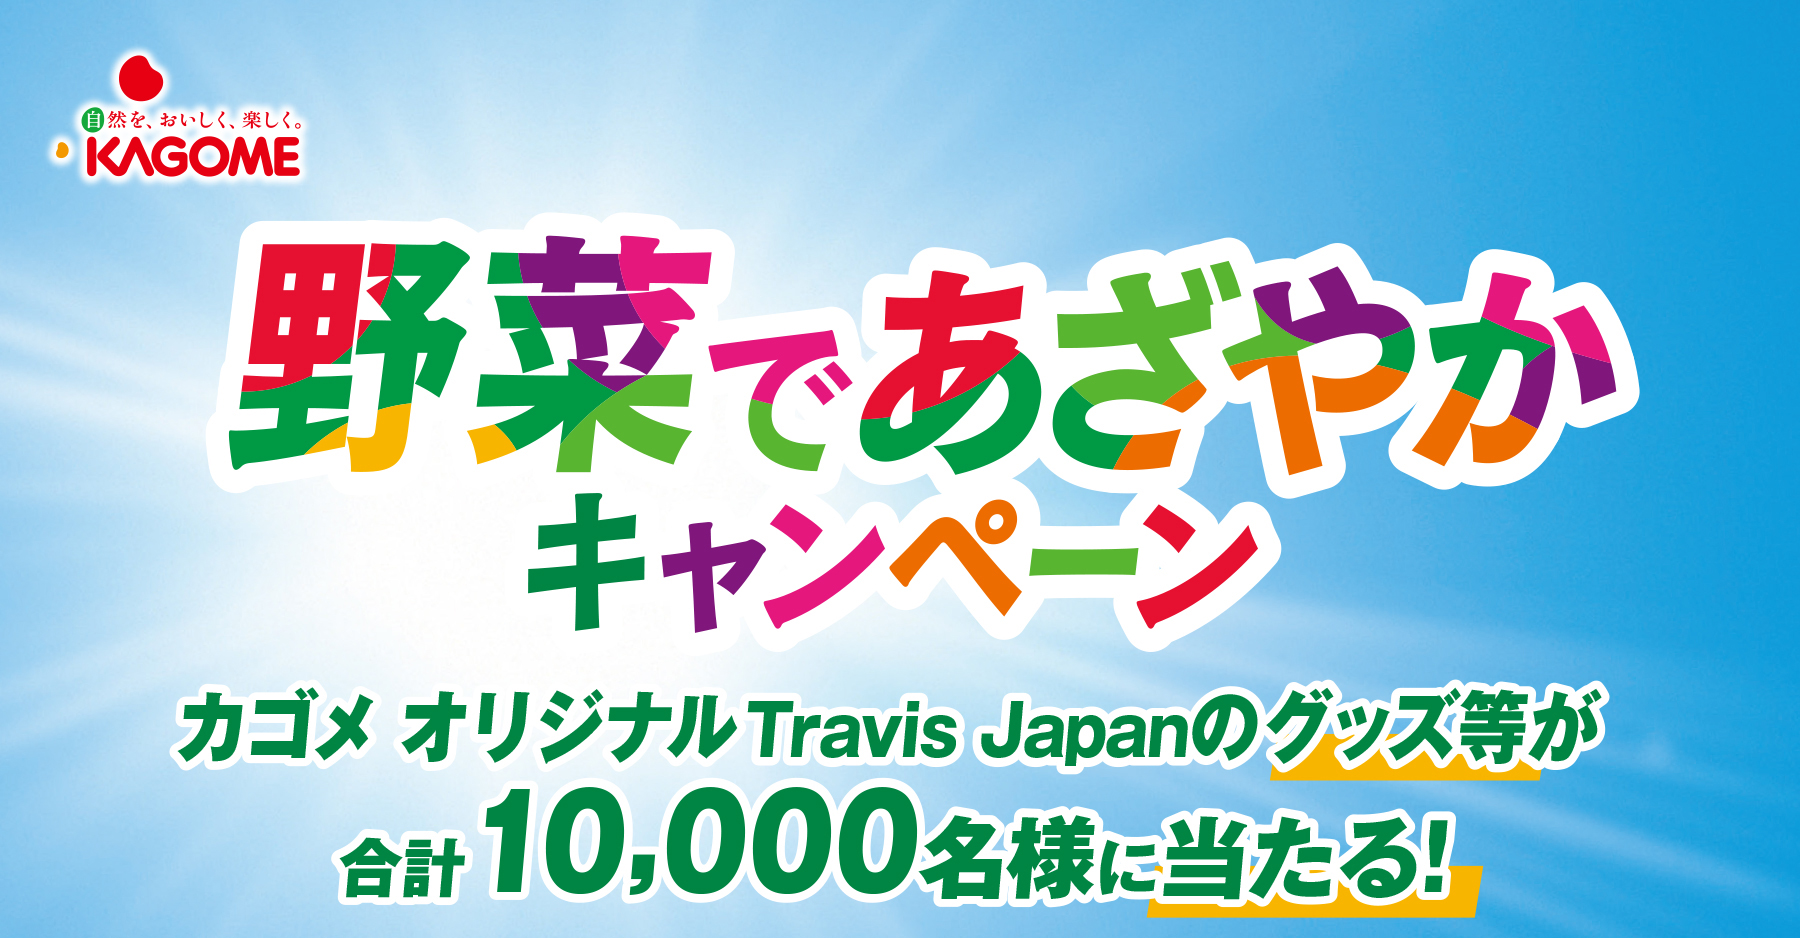 カゴメ オリジナルのTravis Japanグッズ等が合計10,000名様に当たる